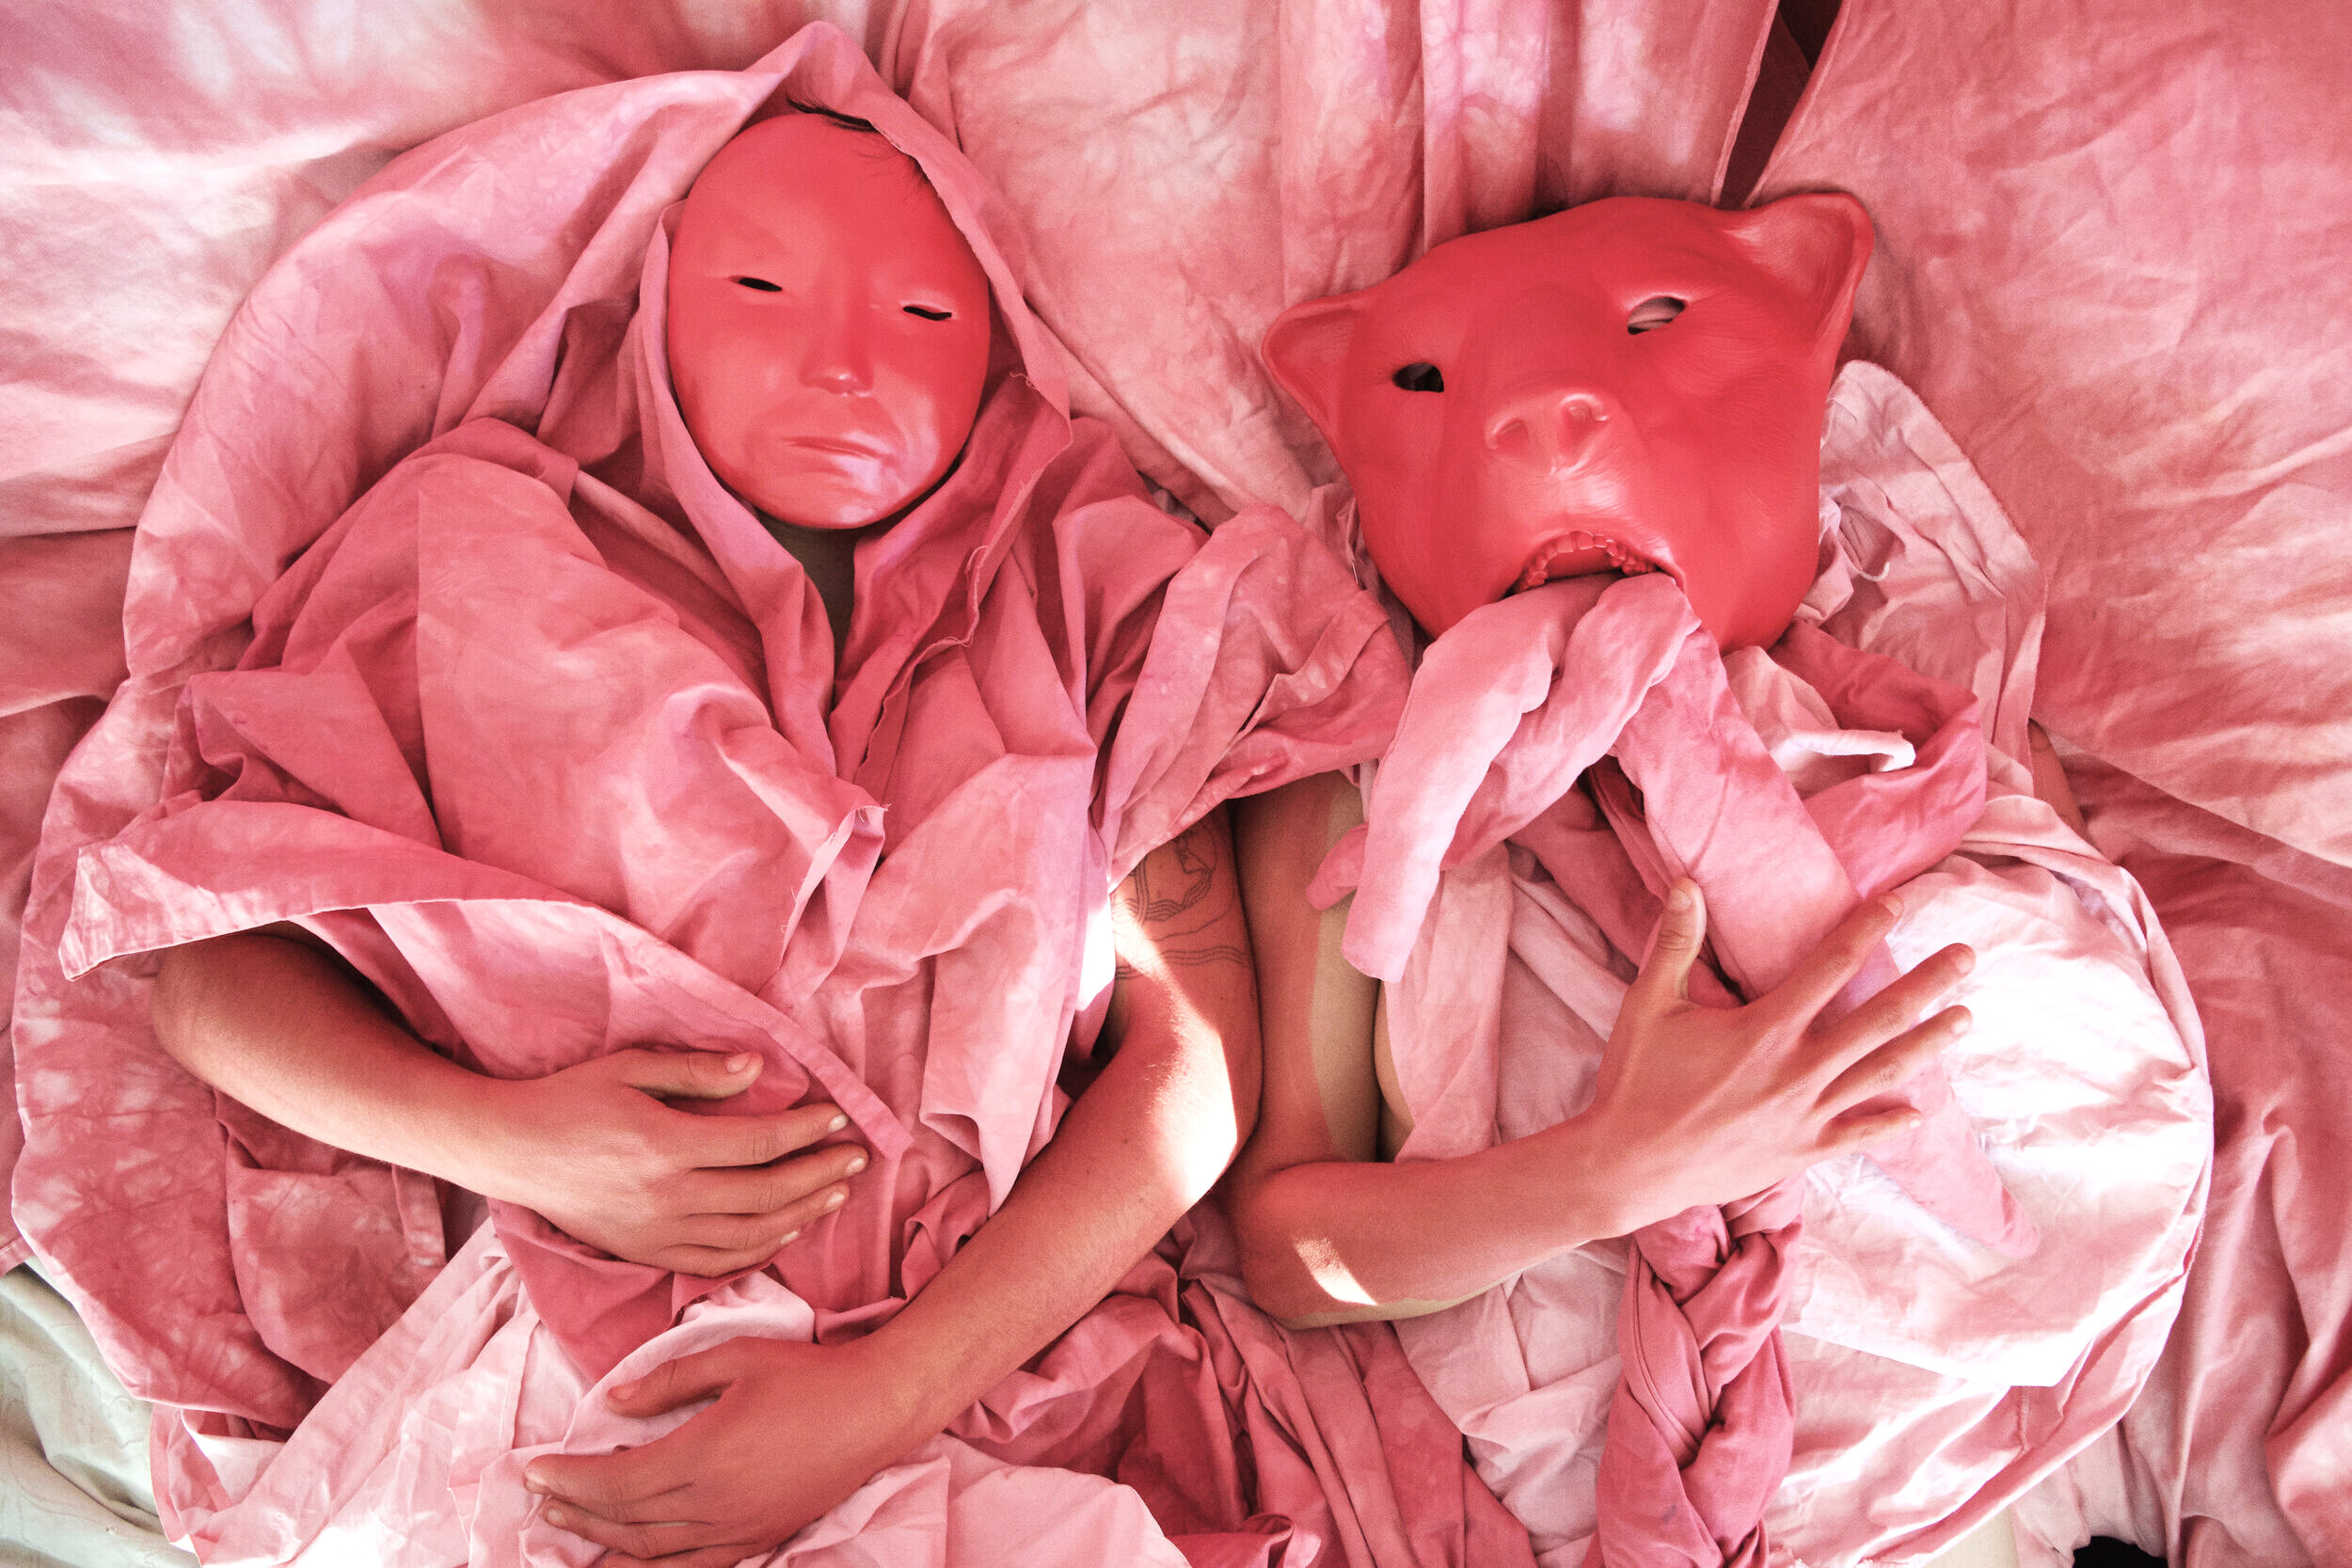  Ceramic masks, aerosol paint, dyed cotton fabric, body paint. Photo and Concept: Rachel Pozivenec. 2020 